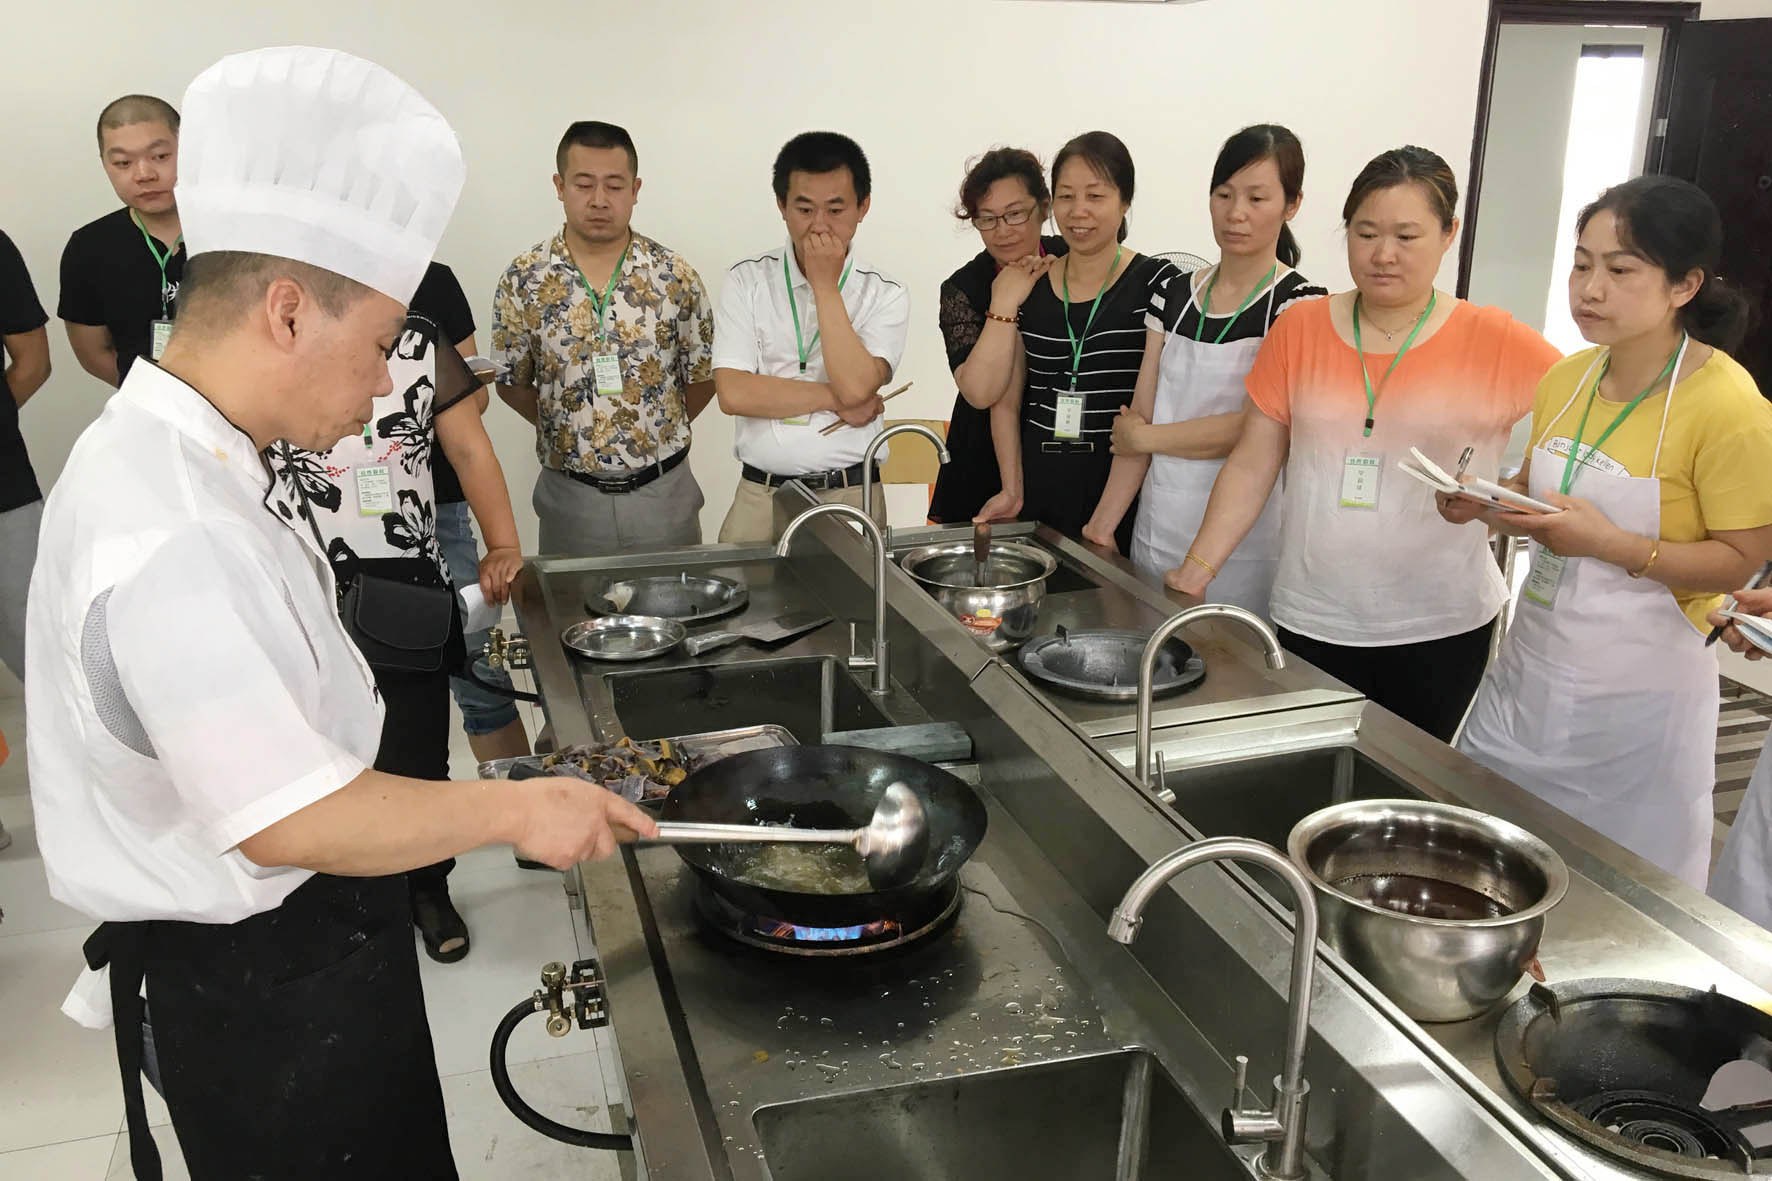 分期分批 长期定点 厨师培训促进就业创业